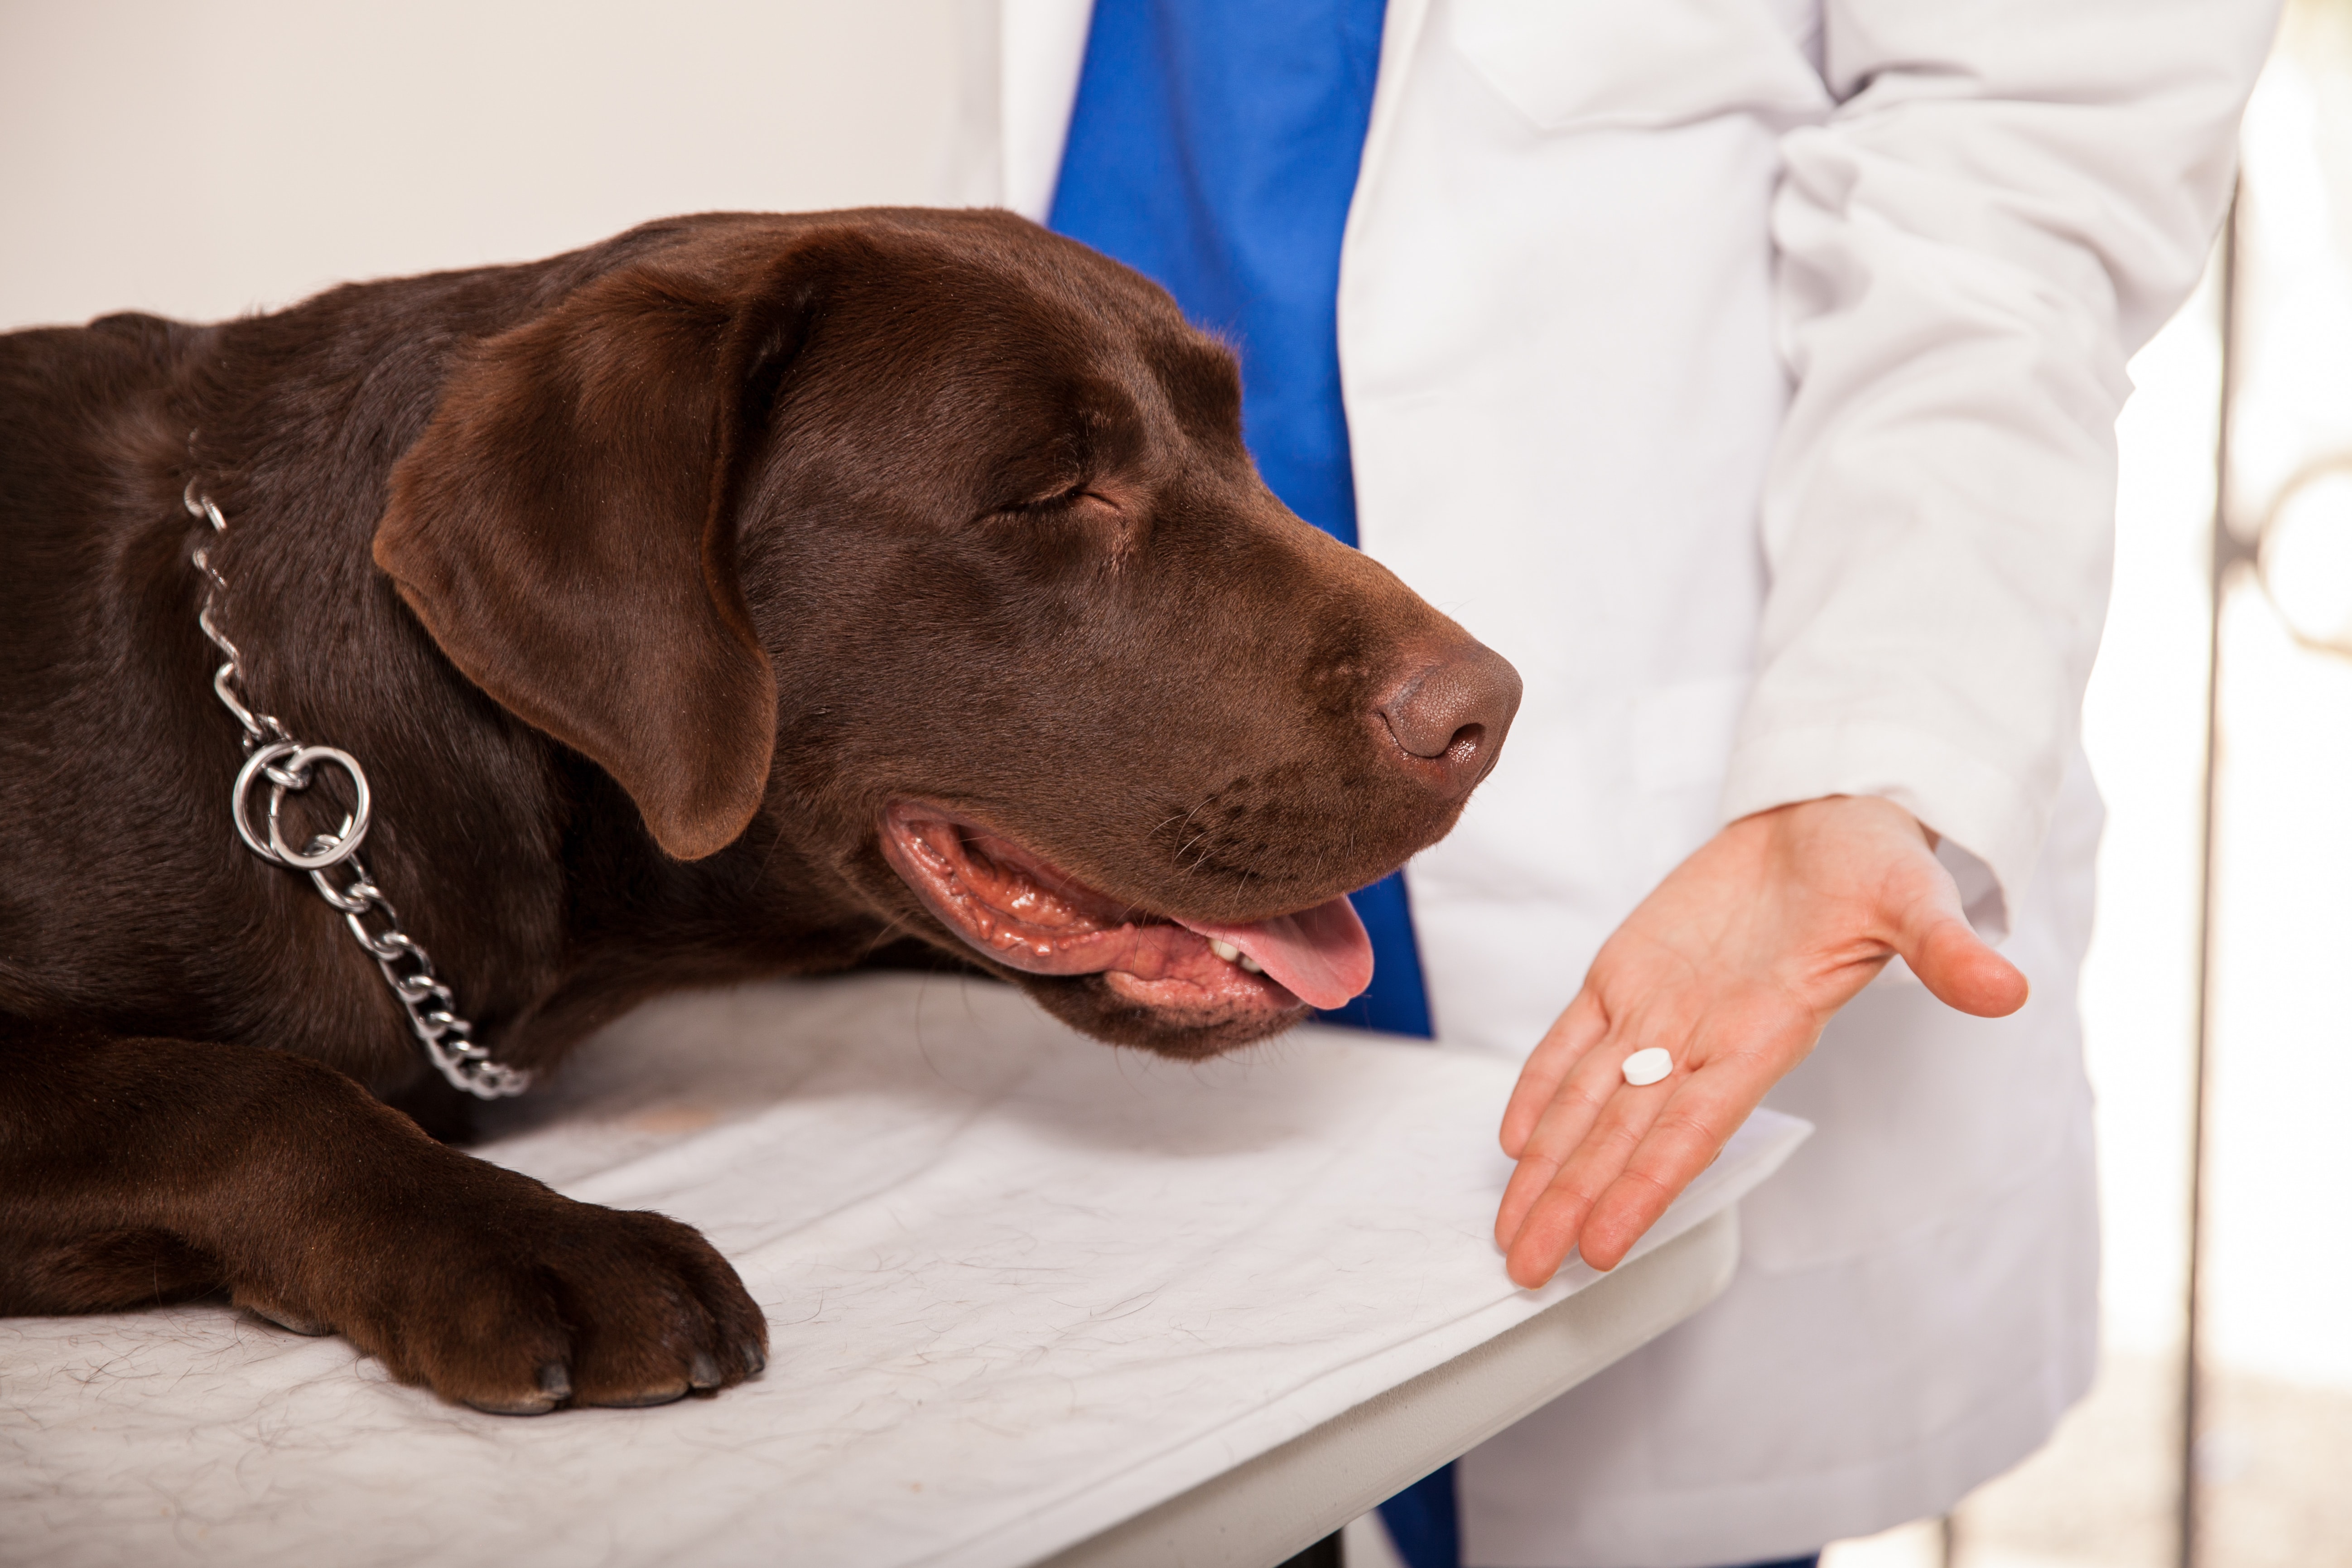 Как дать лекарство собаке